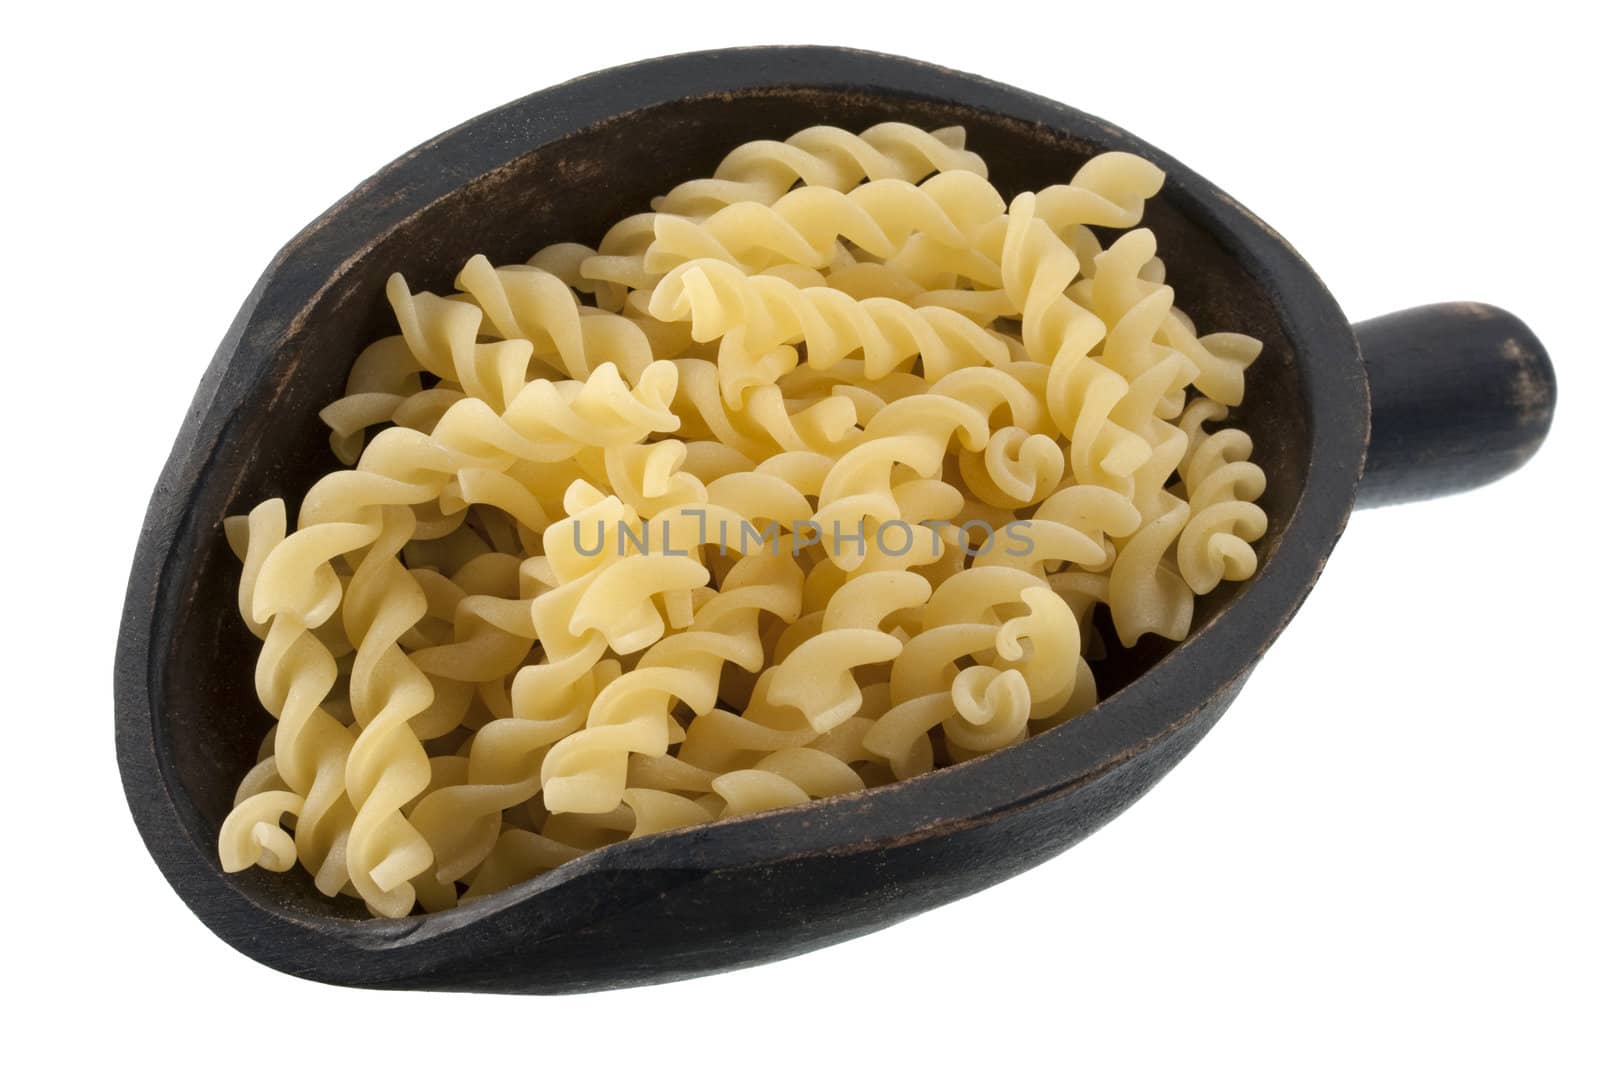 scoop of fusilli pasta by PixelsAway